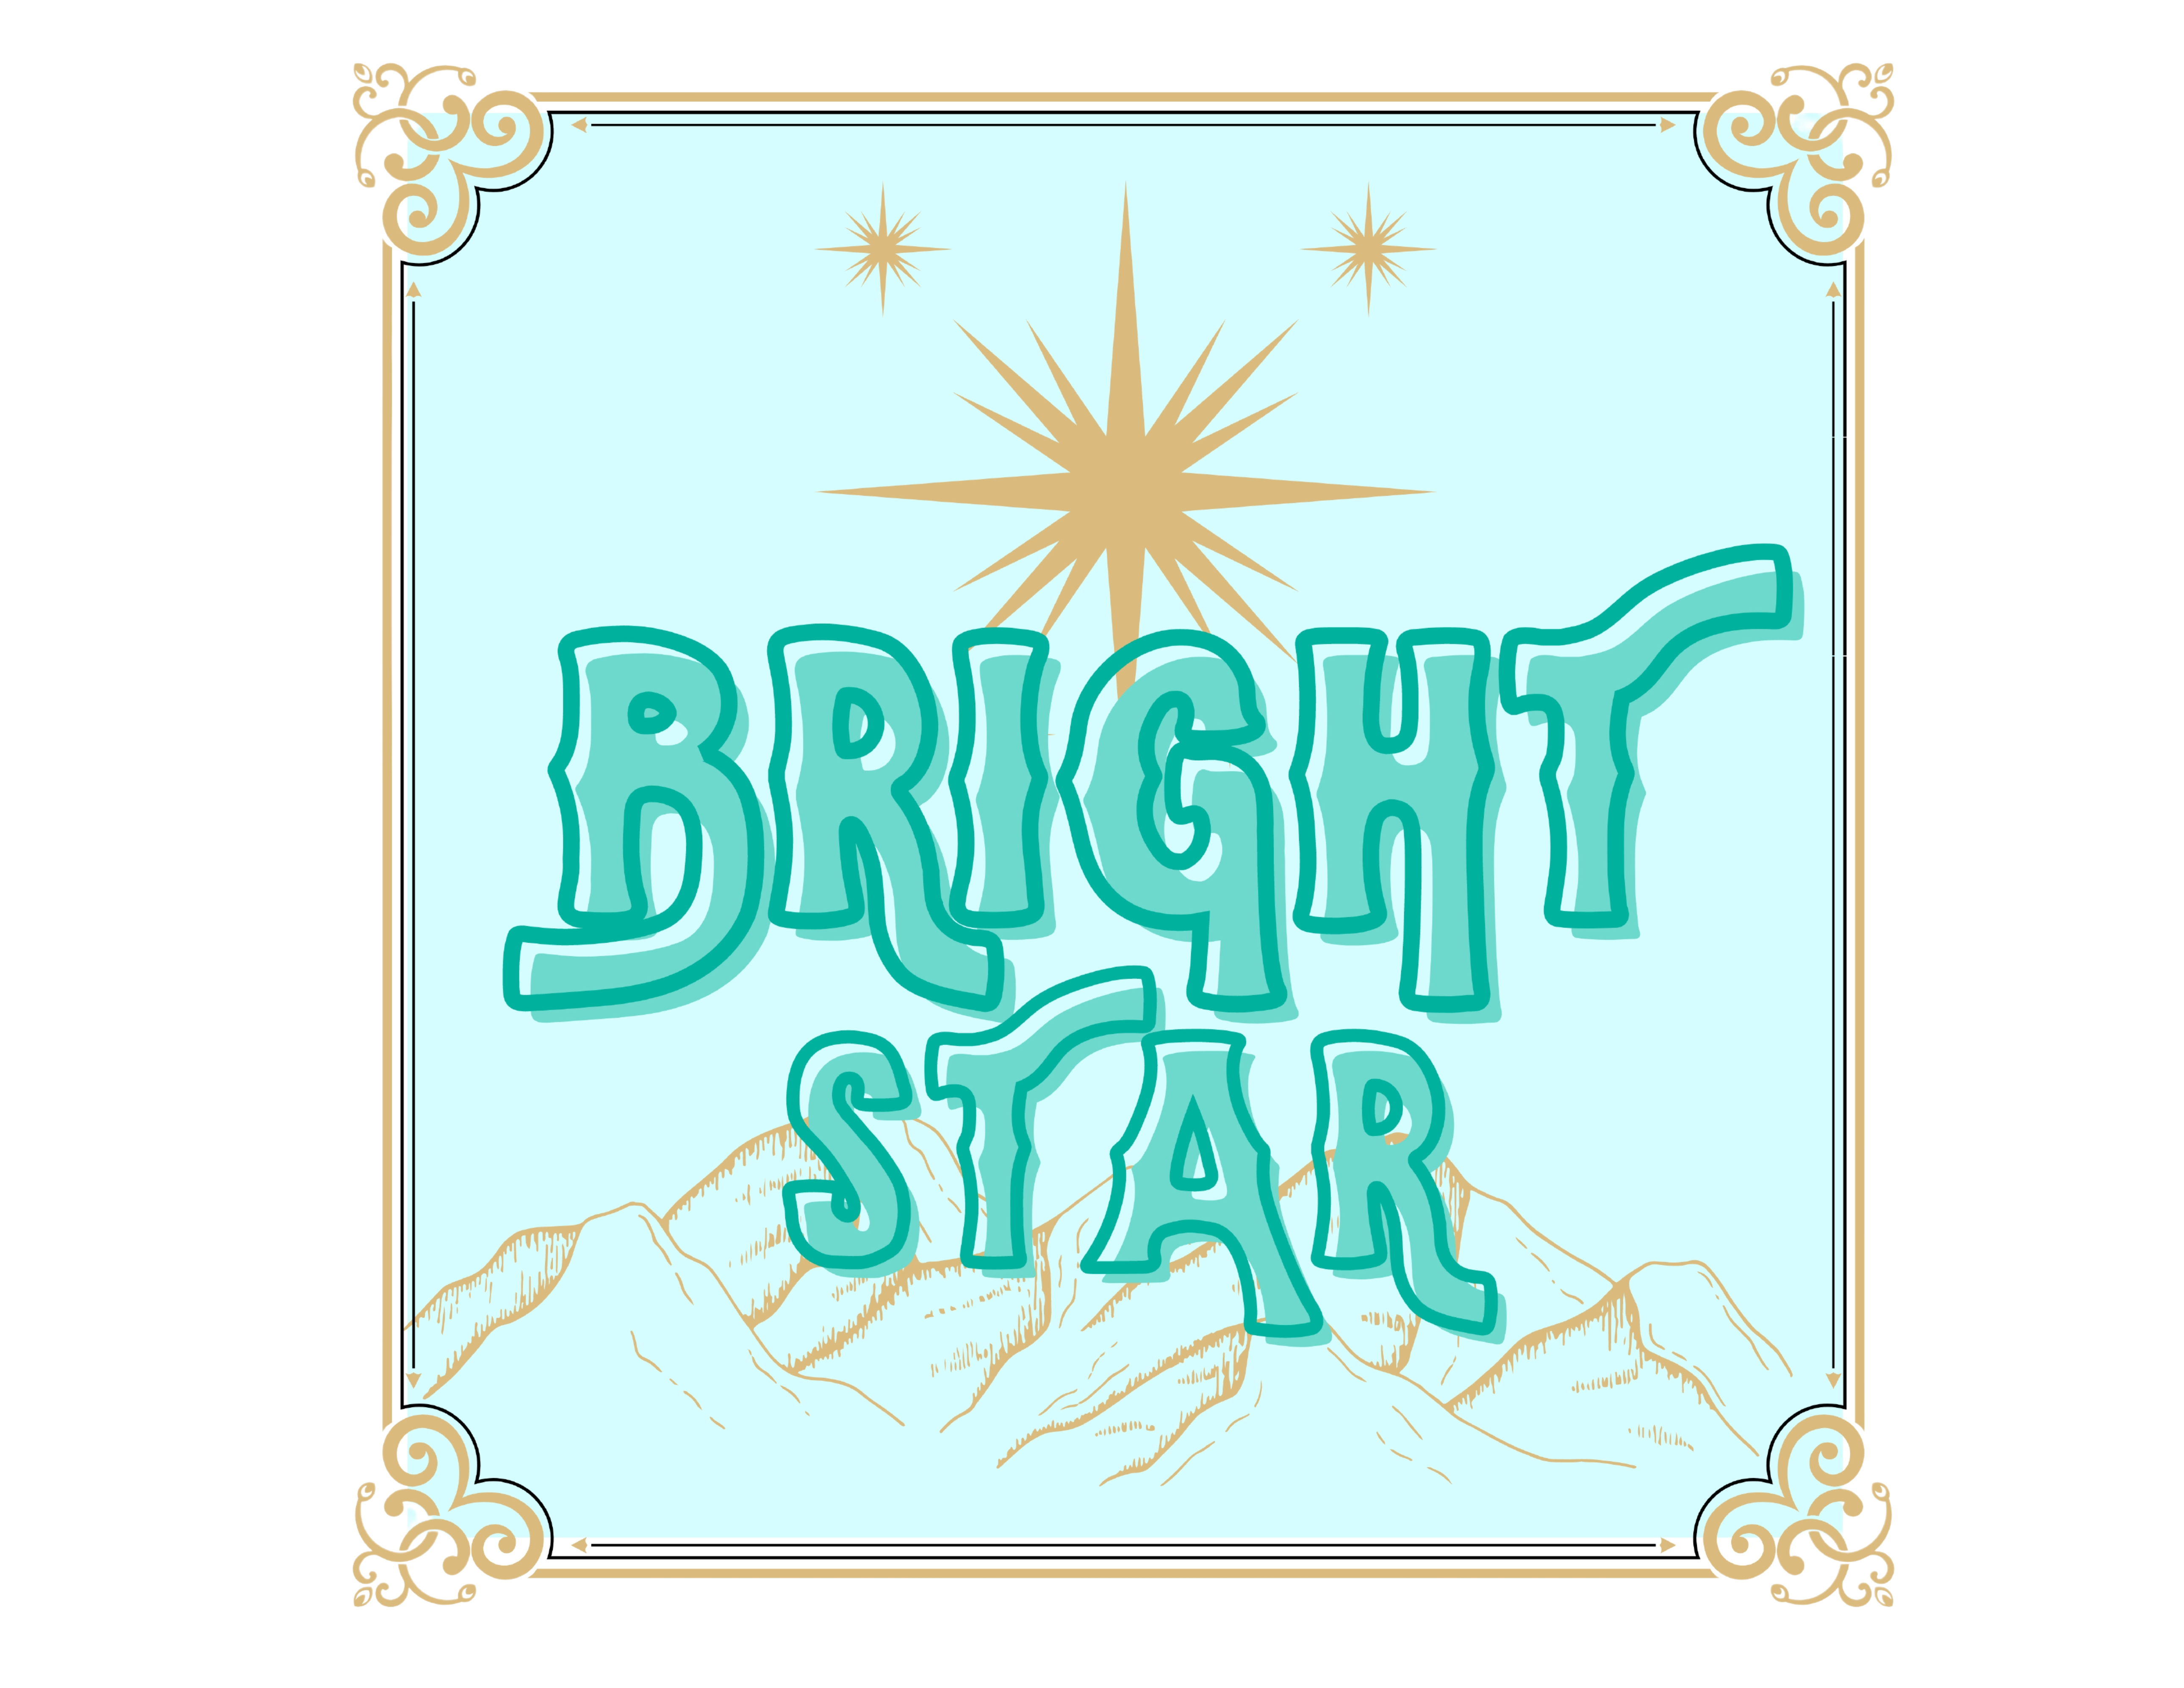 BrightStar